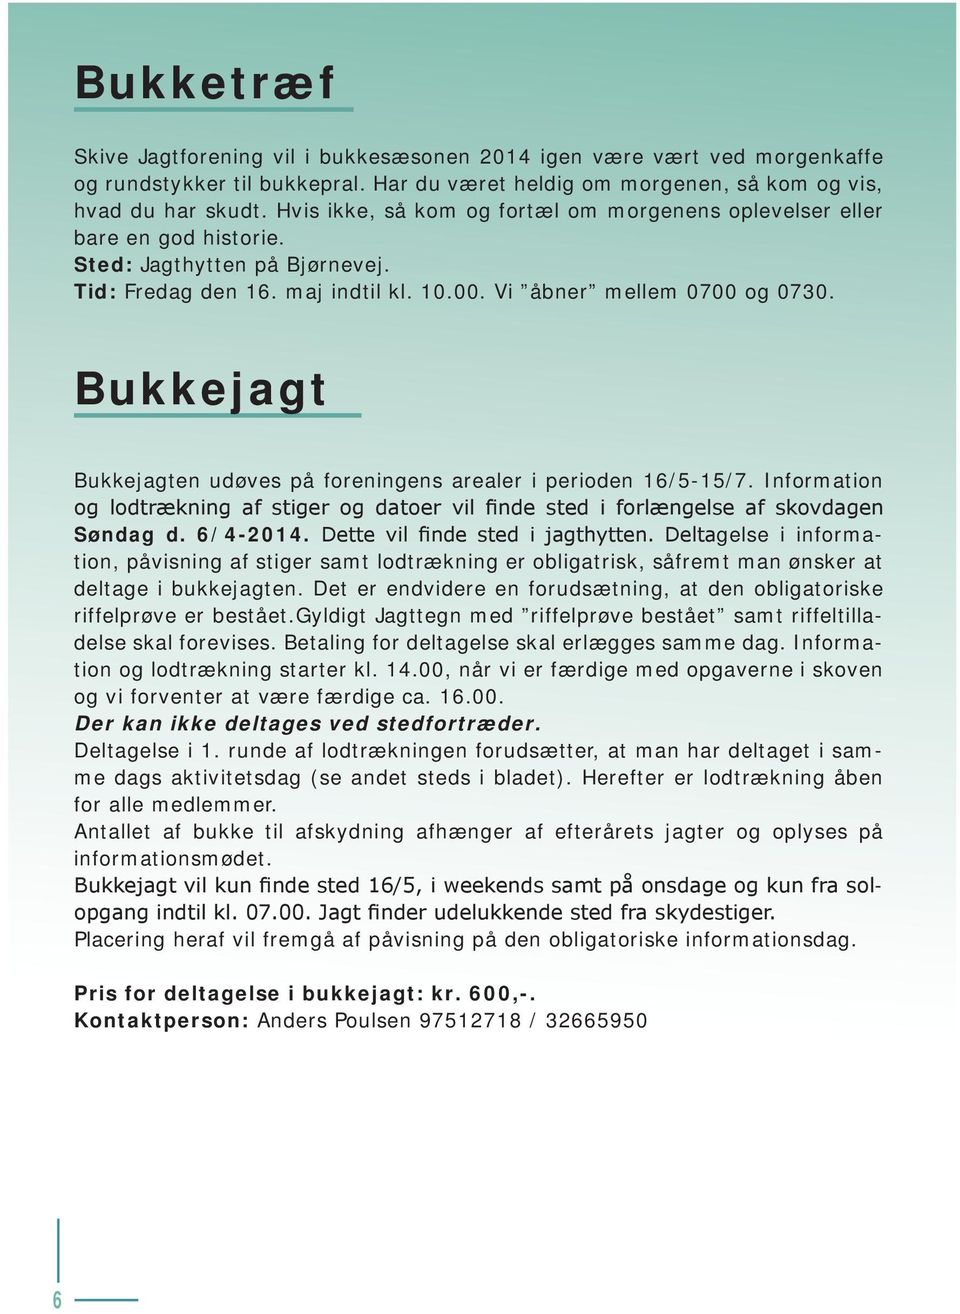 Bukkejagt Bukkejagten udøves på foreningens arealer i perioden 16/5-15/7. Information og lodtrækning af stiger og datoer vil finde sted i forlængelse af skovdagen Søndag d. 6/4-2014.